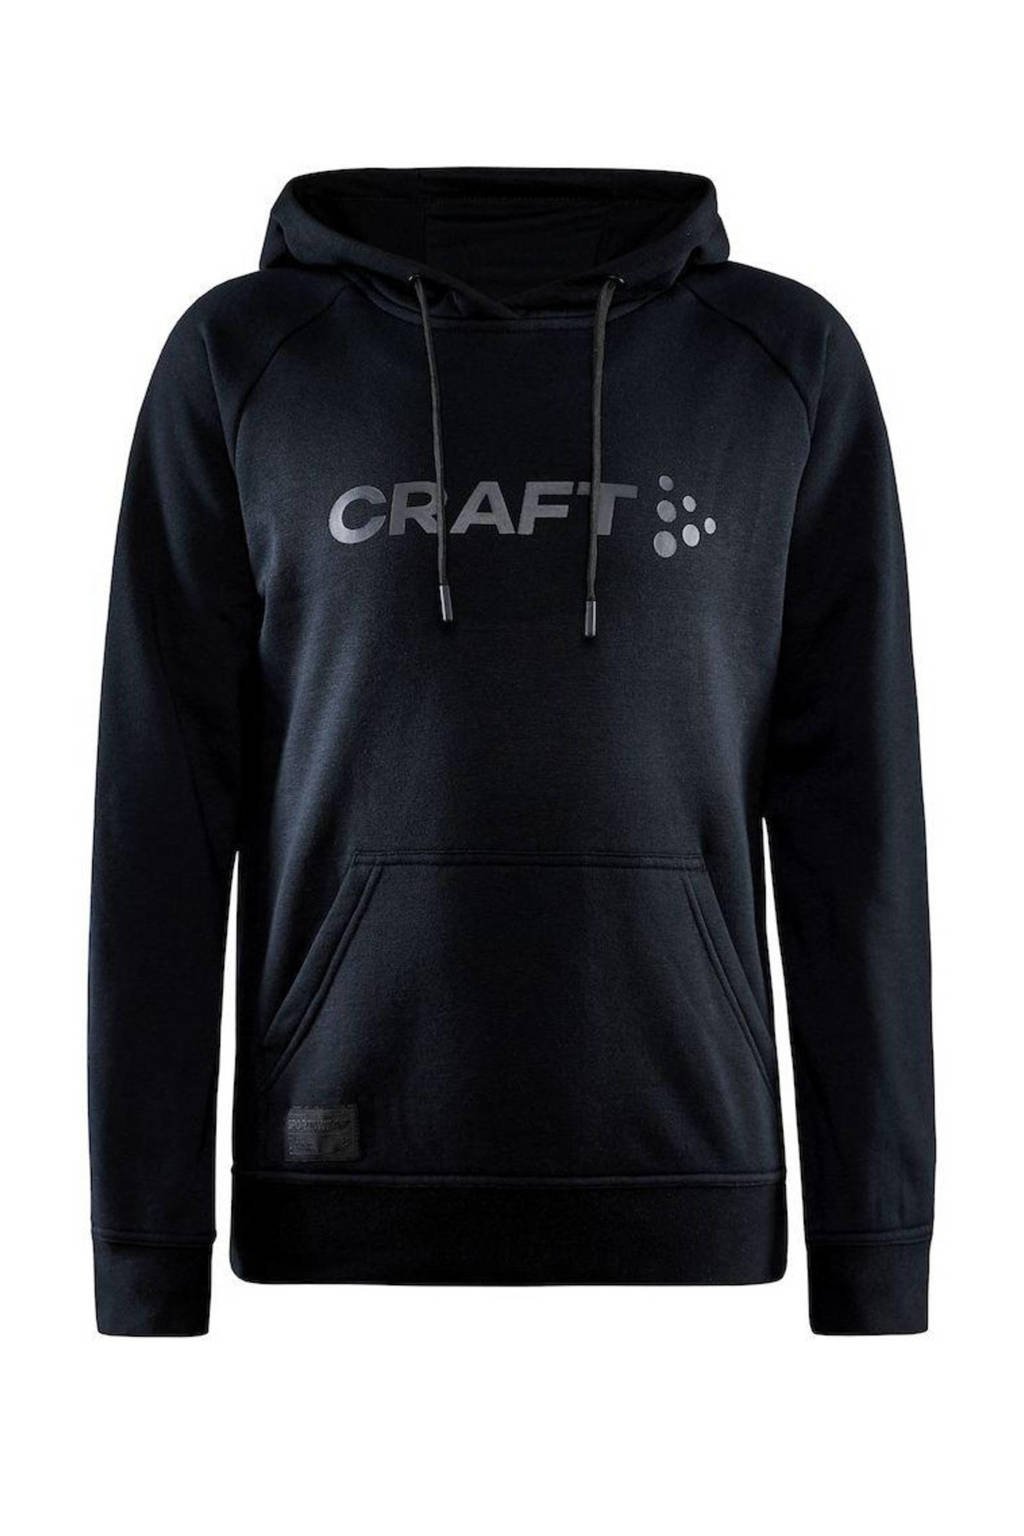 Zwarte dames Craft hoodie Core van polyester met logo dessin, lange mouwen en capuchon